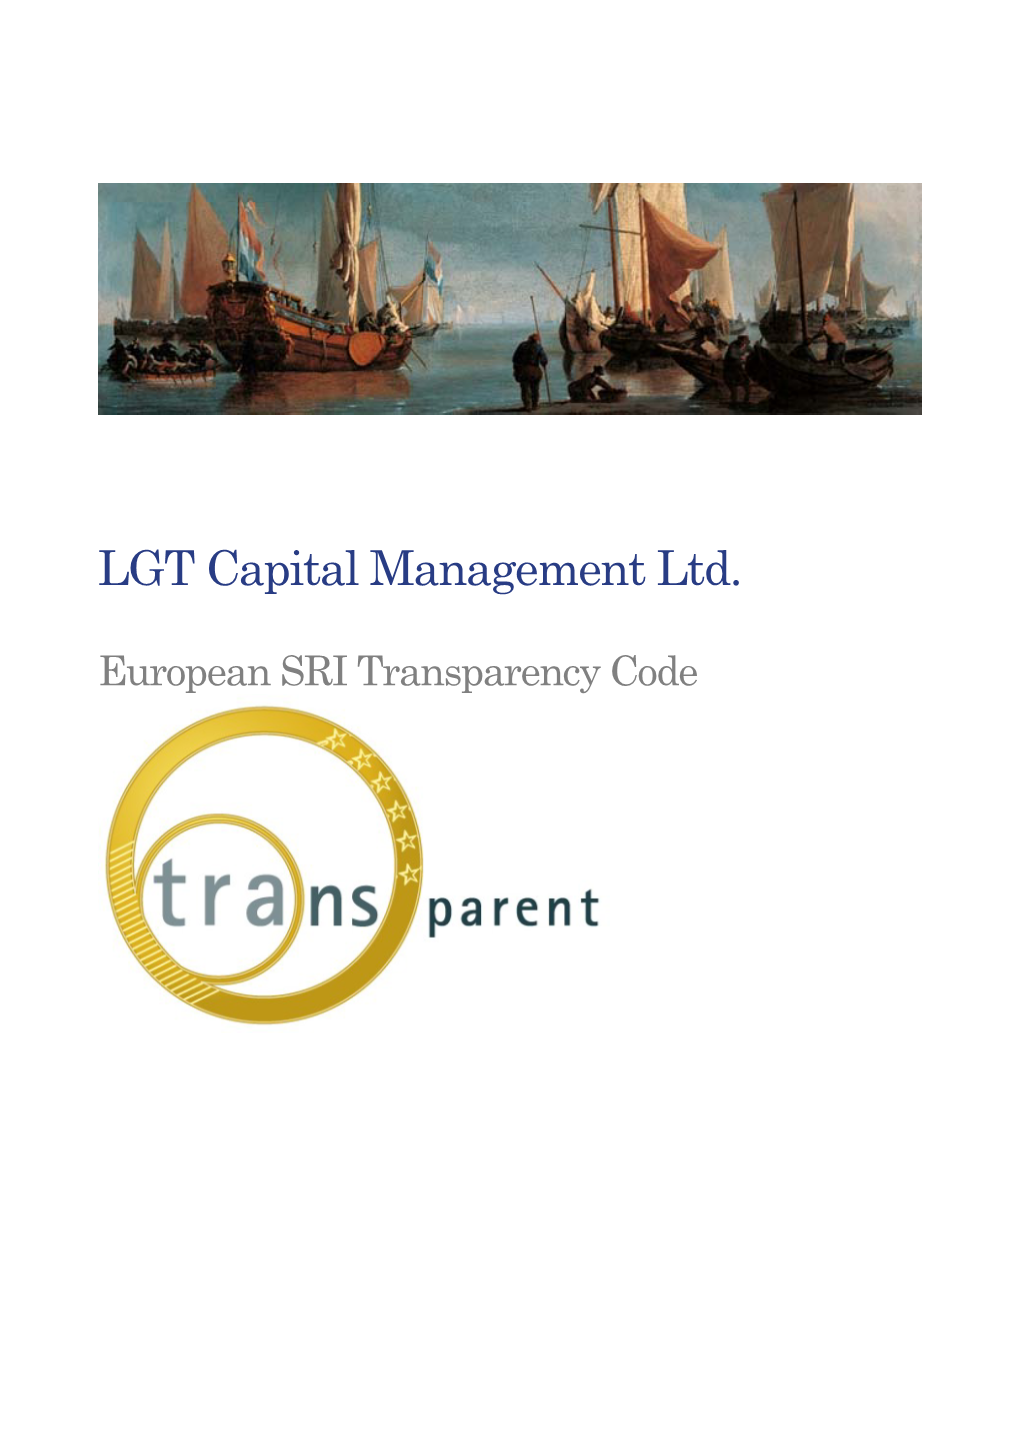 LGT Capital Management Ltd